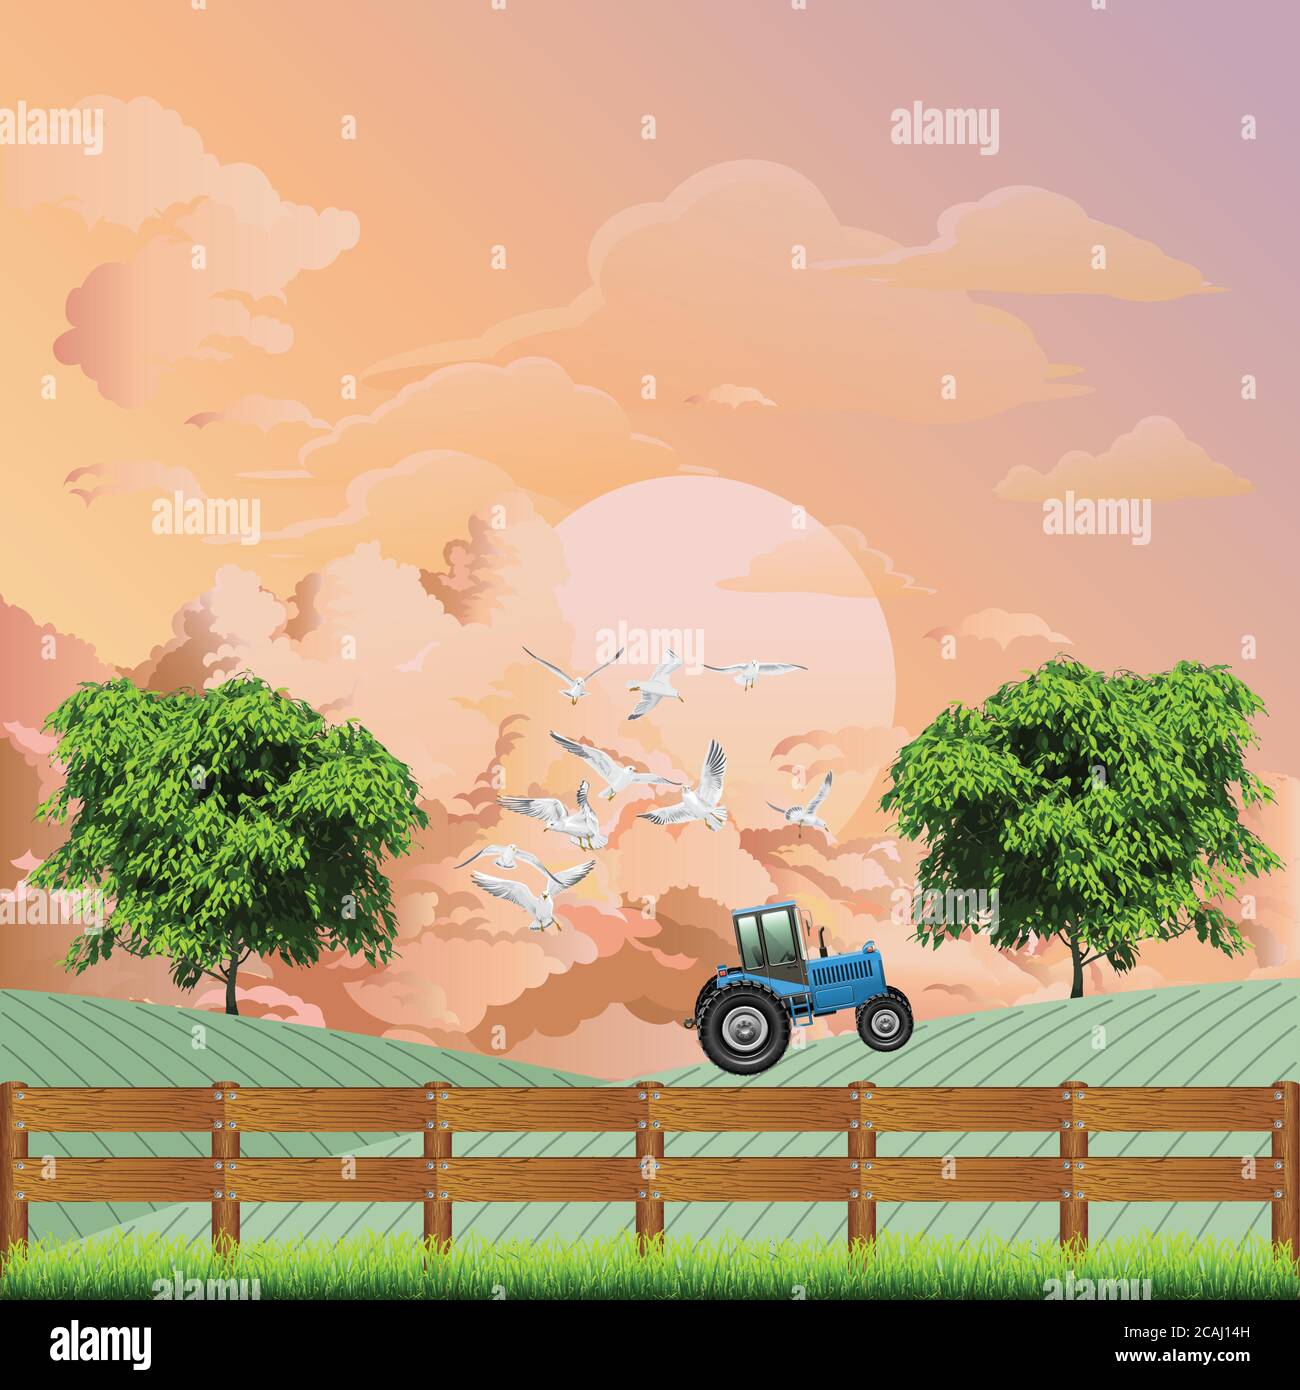 Pintoresca escena rural con tractor trabajando en una granja con gaviotas volando cerca del vehículo contra un amanecer o el cielo al atardecer Ilustración del Vector